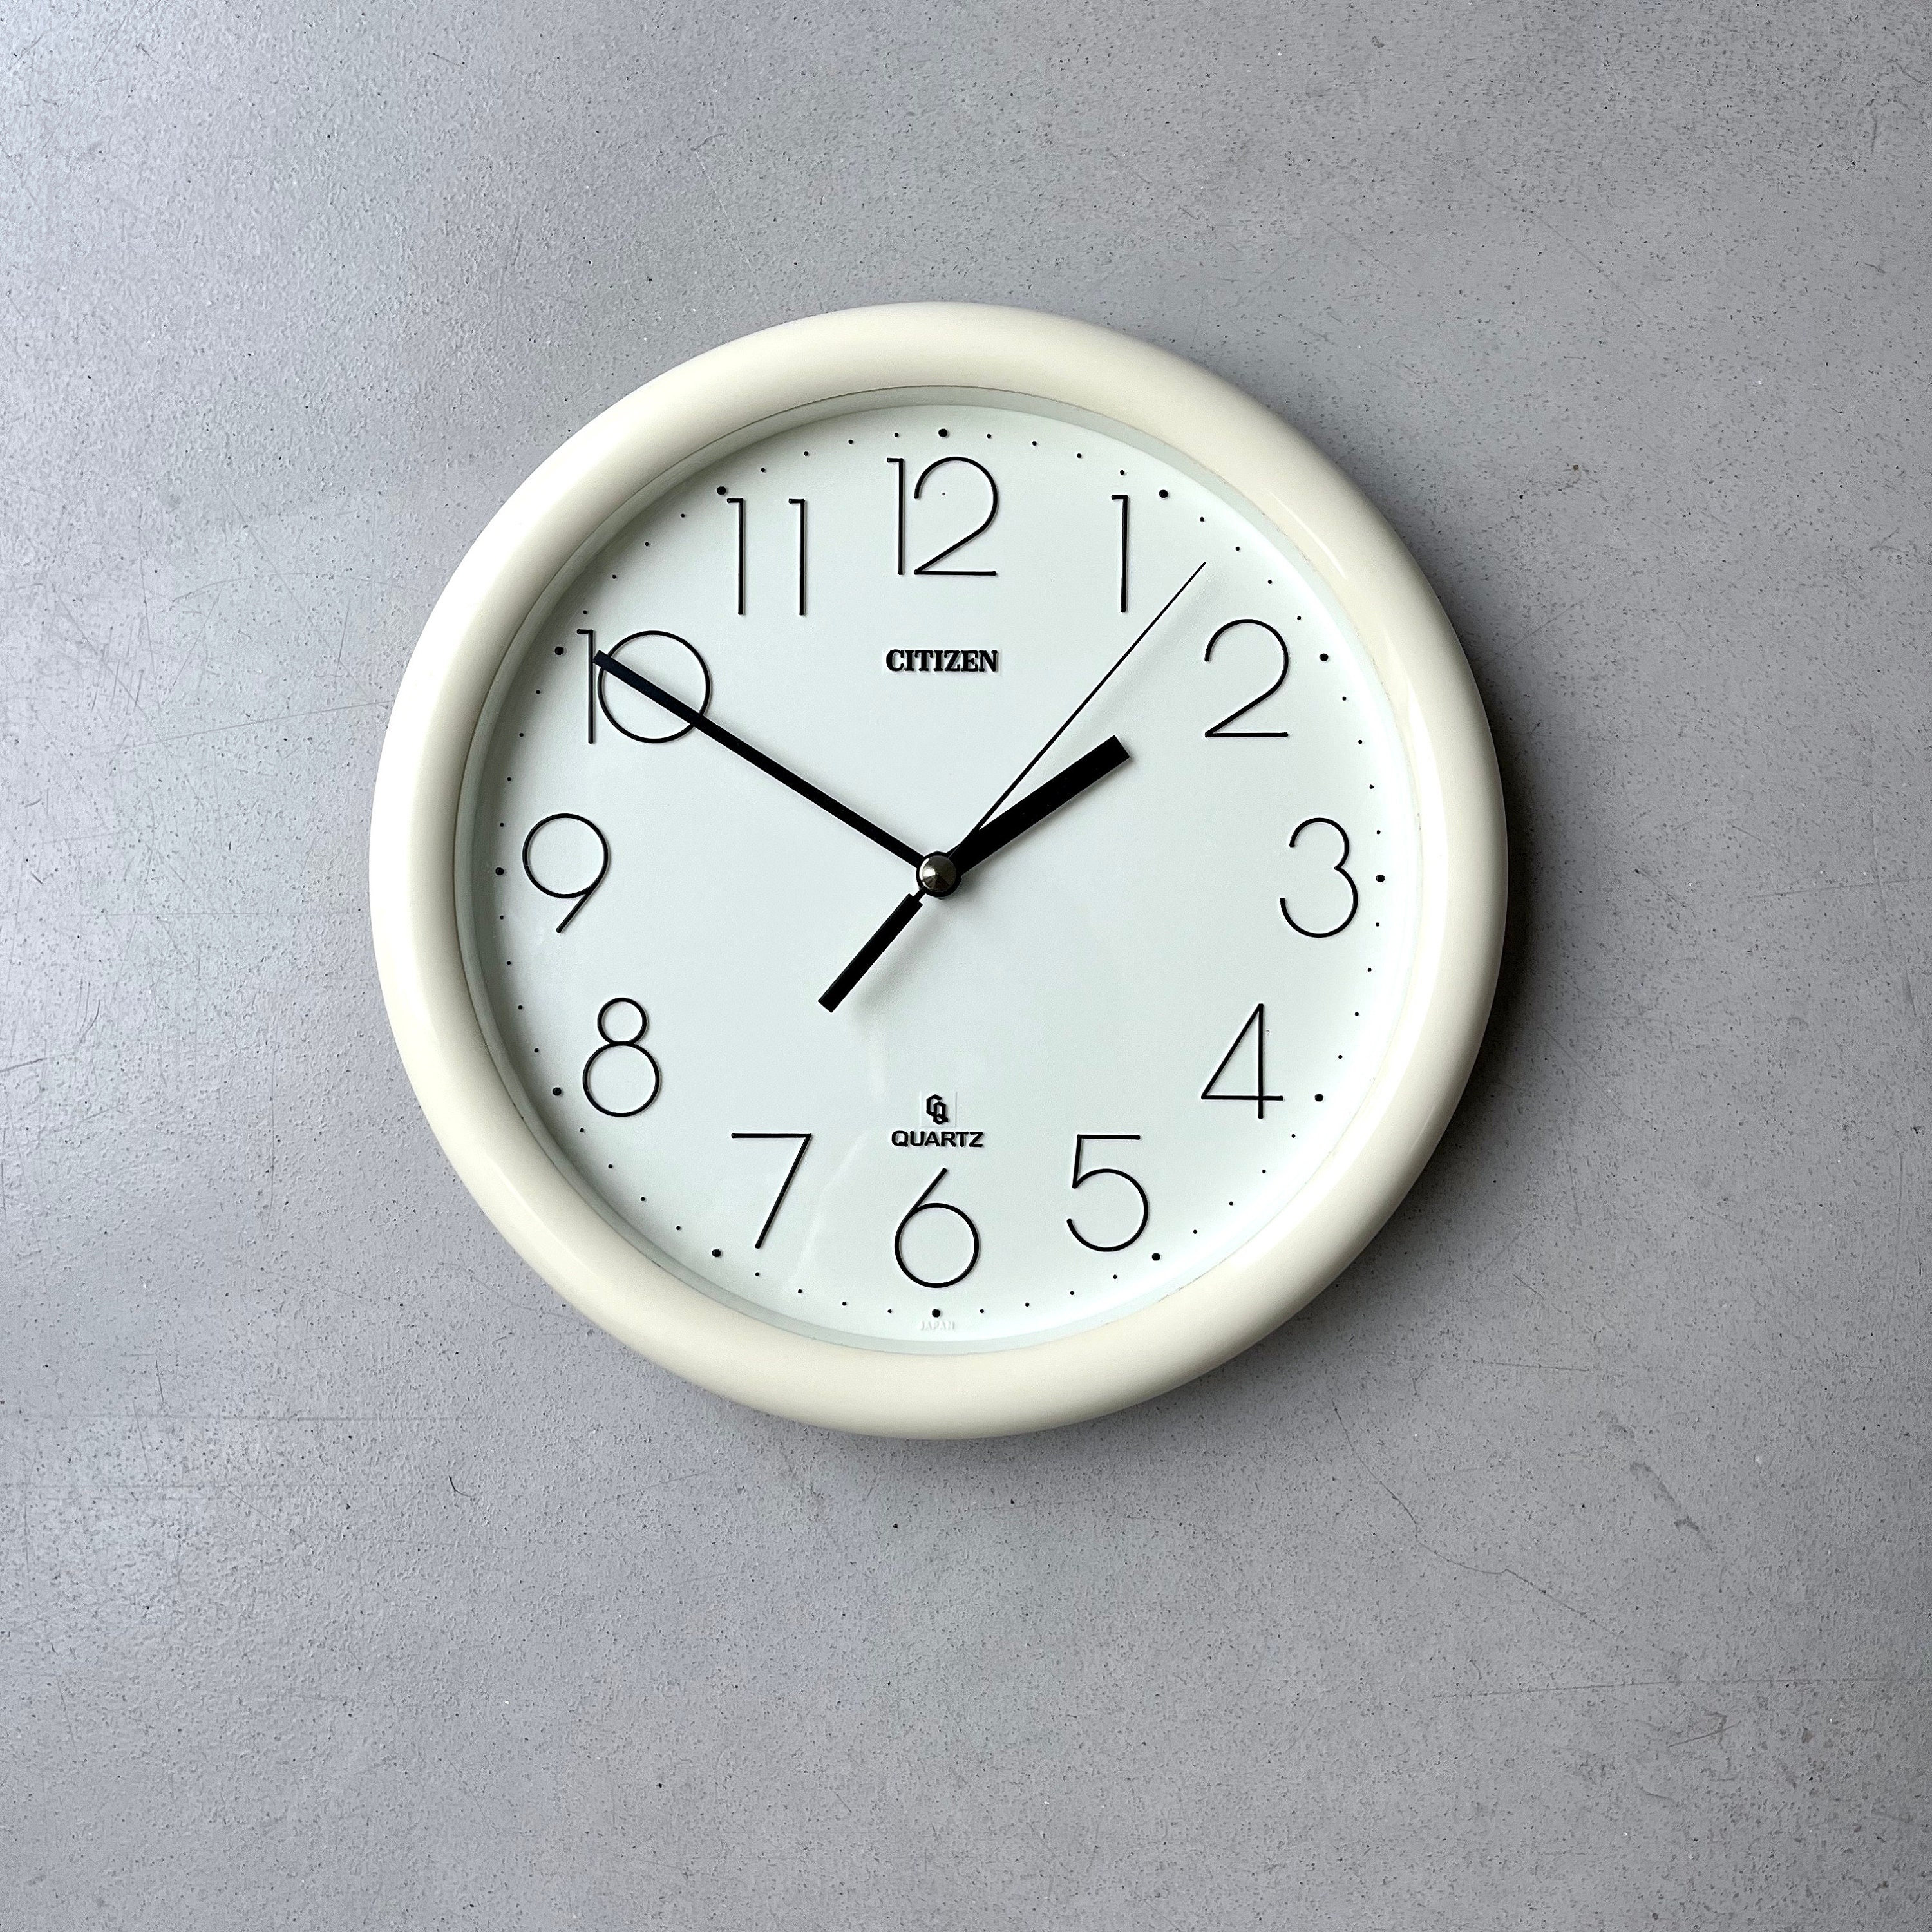 Vintage Kitchen Clock Citizen Wall Clock White 80s Round - Etsy